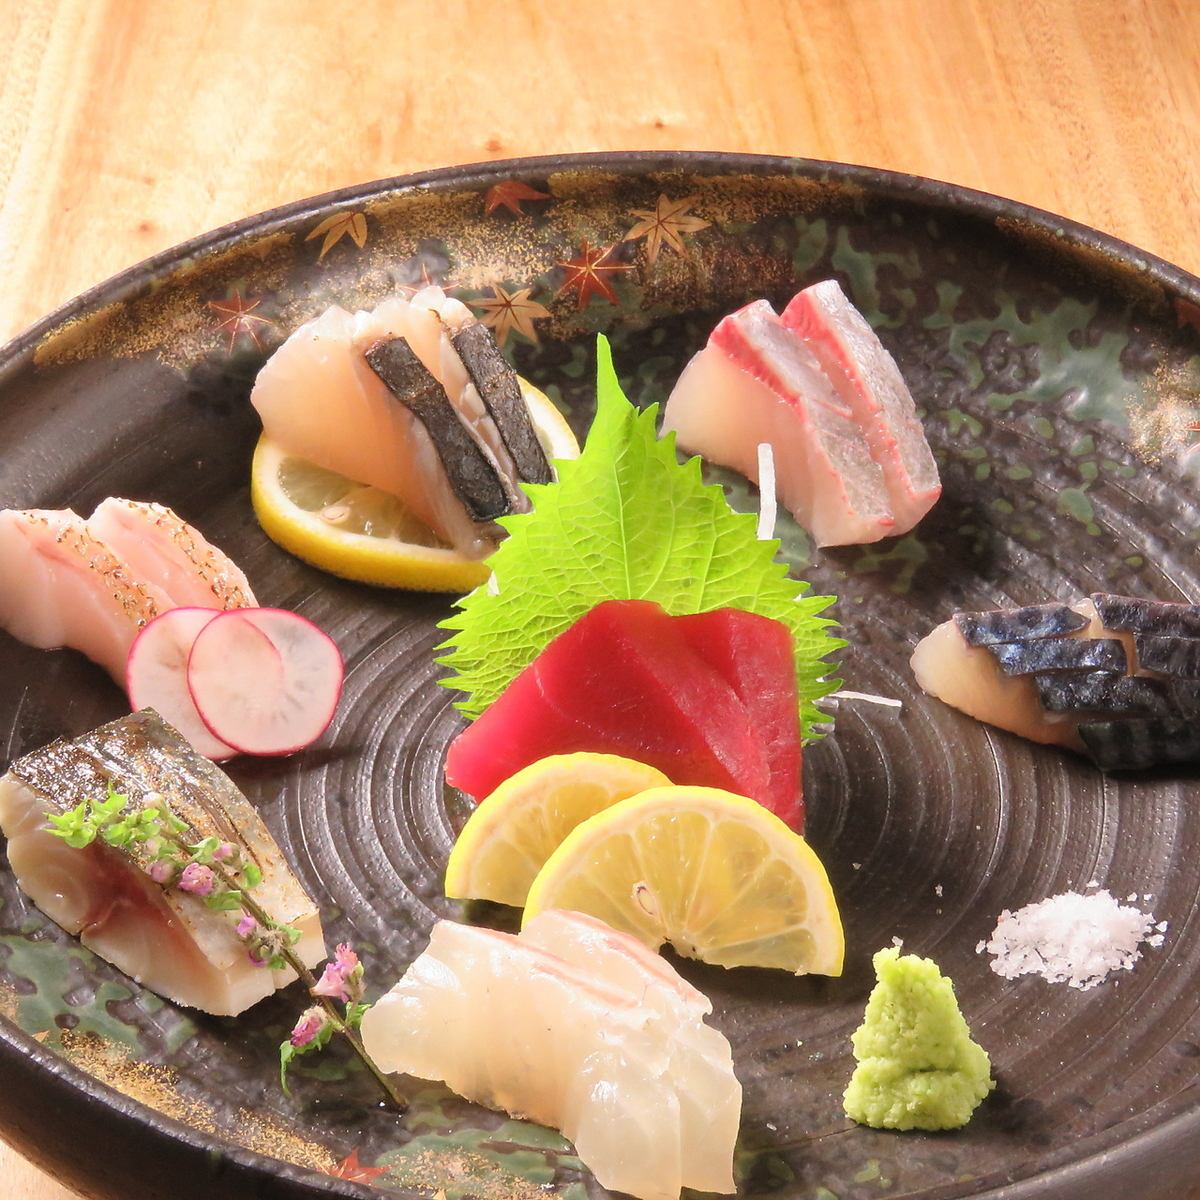 Exquisite seafood Japanese food such as sashimi sent directly from the market/red shrimp lemon shabu-shabu